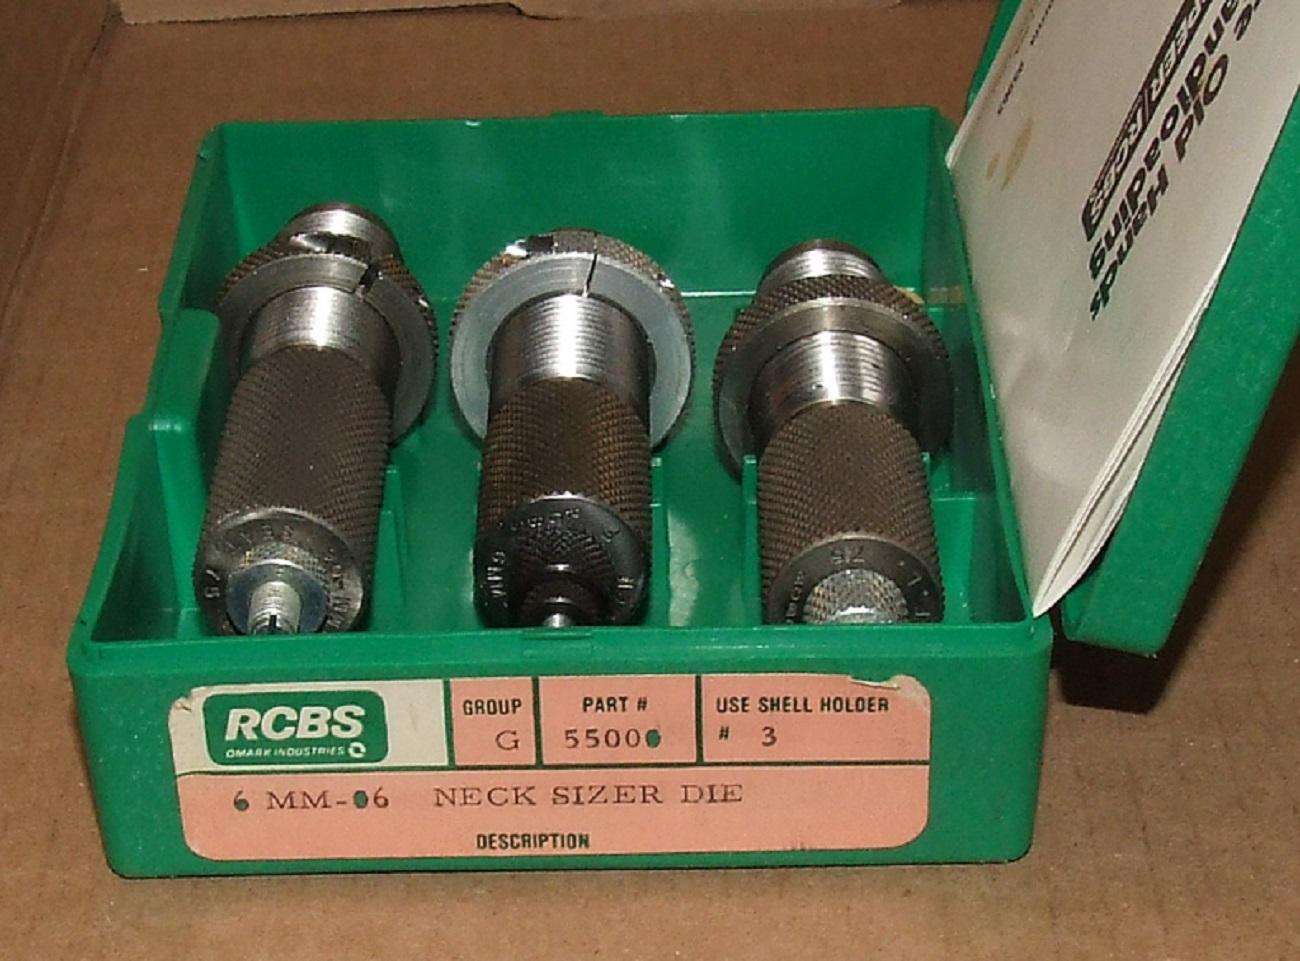 RCBS 6mm/06 FL & Neck Size Die Set